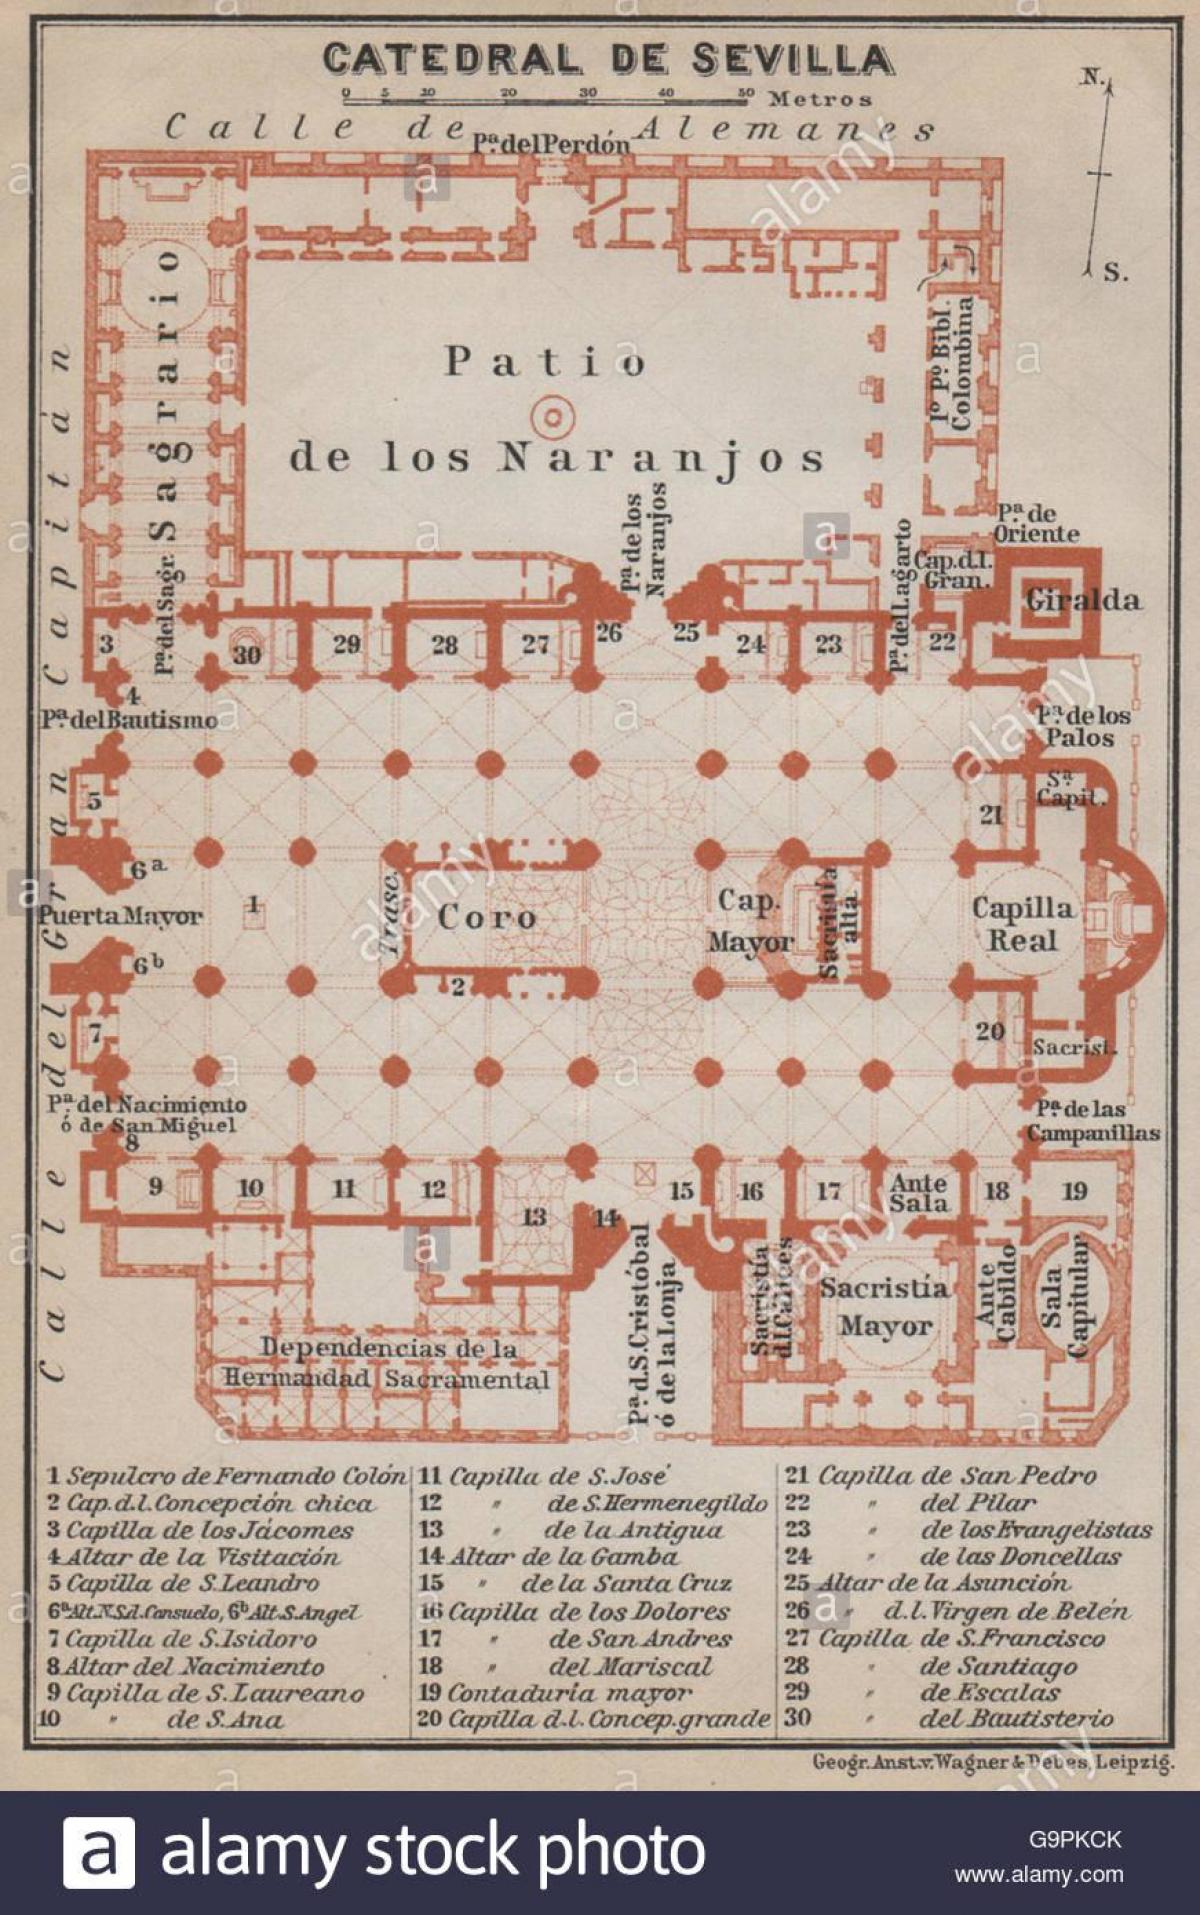 რუკა სევილიის საკათედრო ტაძარი